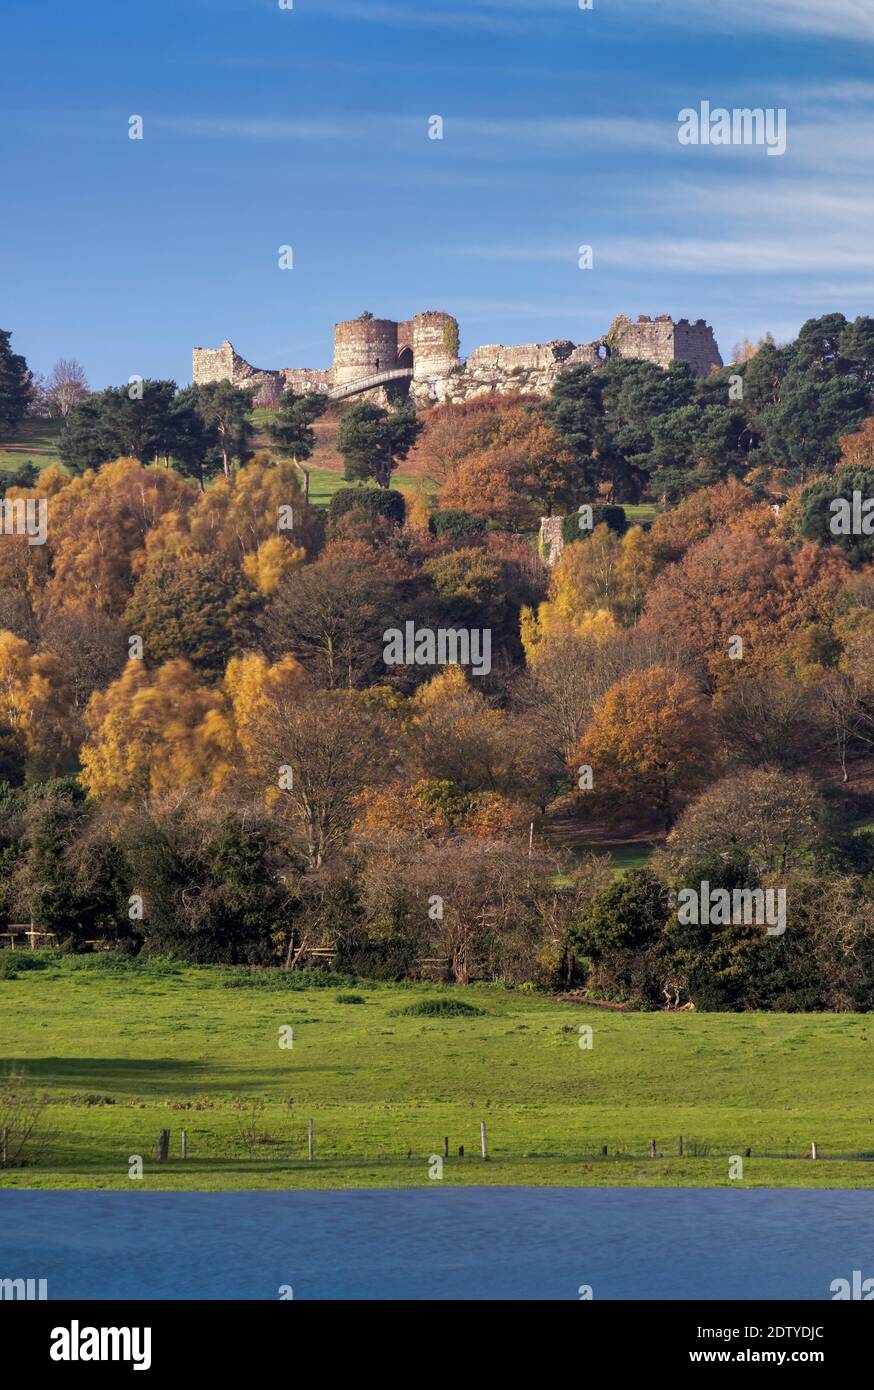 Château de Beeston en automne, Beeston, Cheshire, Angleterre, Royaume-Uni Banque D'Images